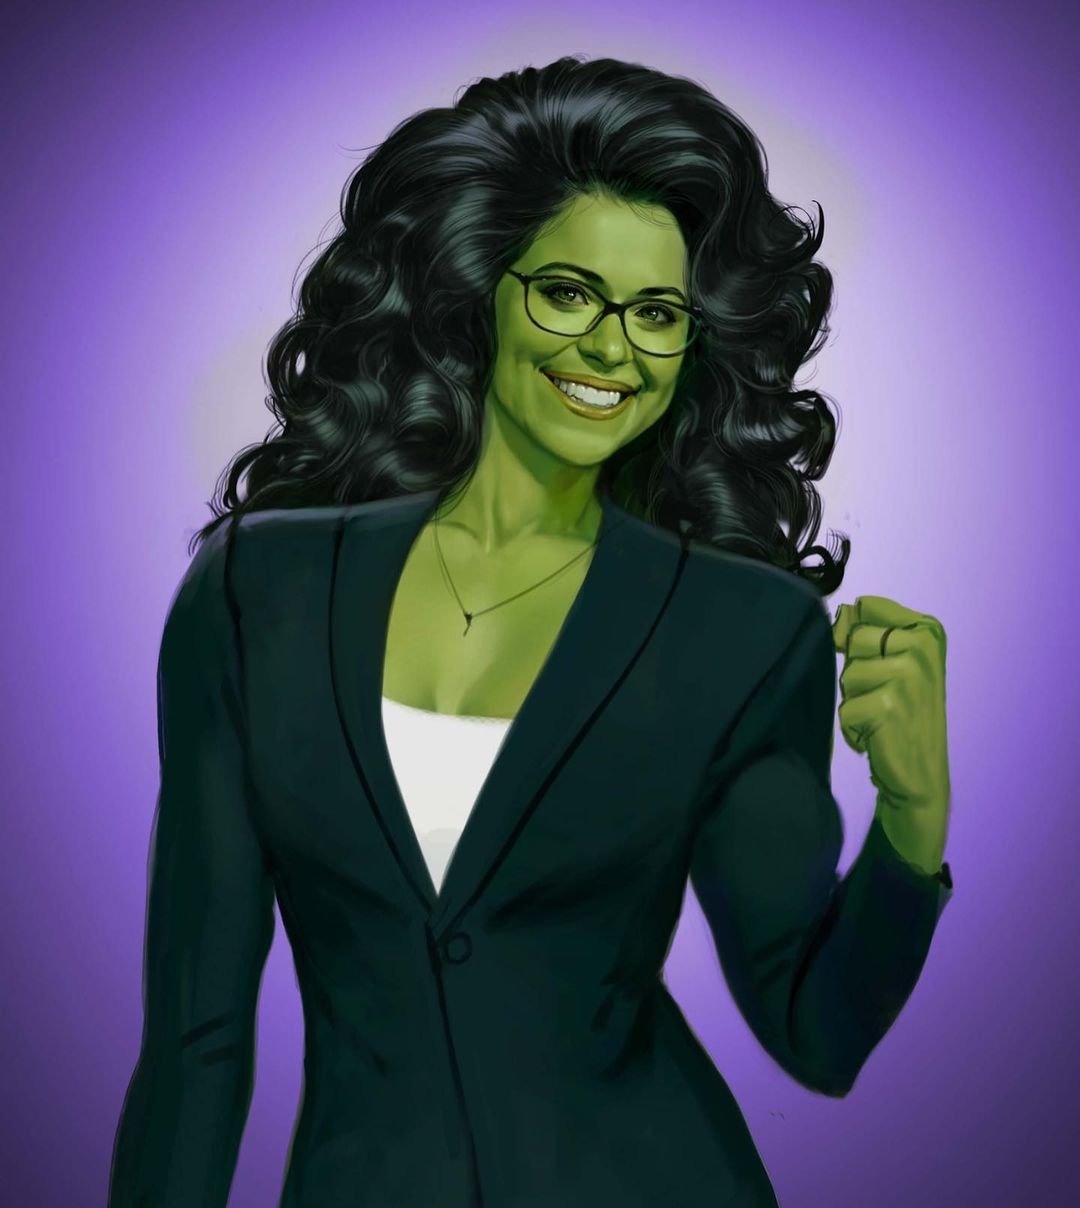 She-Hulk Diretora comenta sobre possível segunda temporada da série